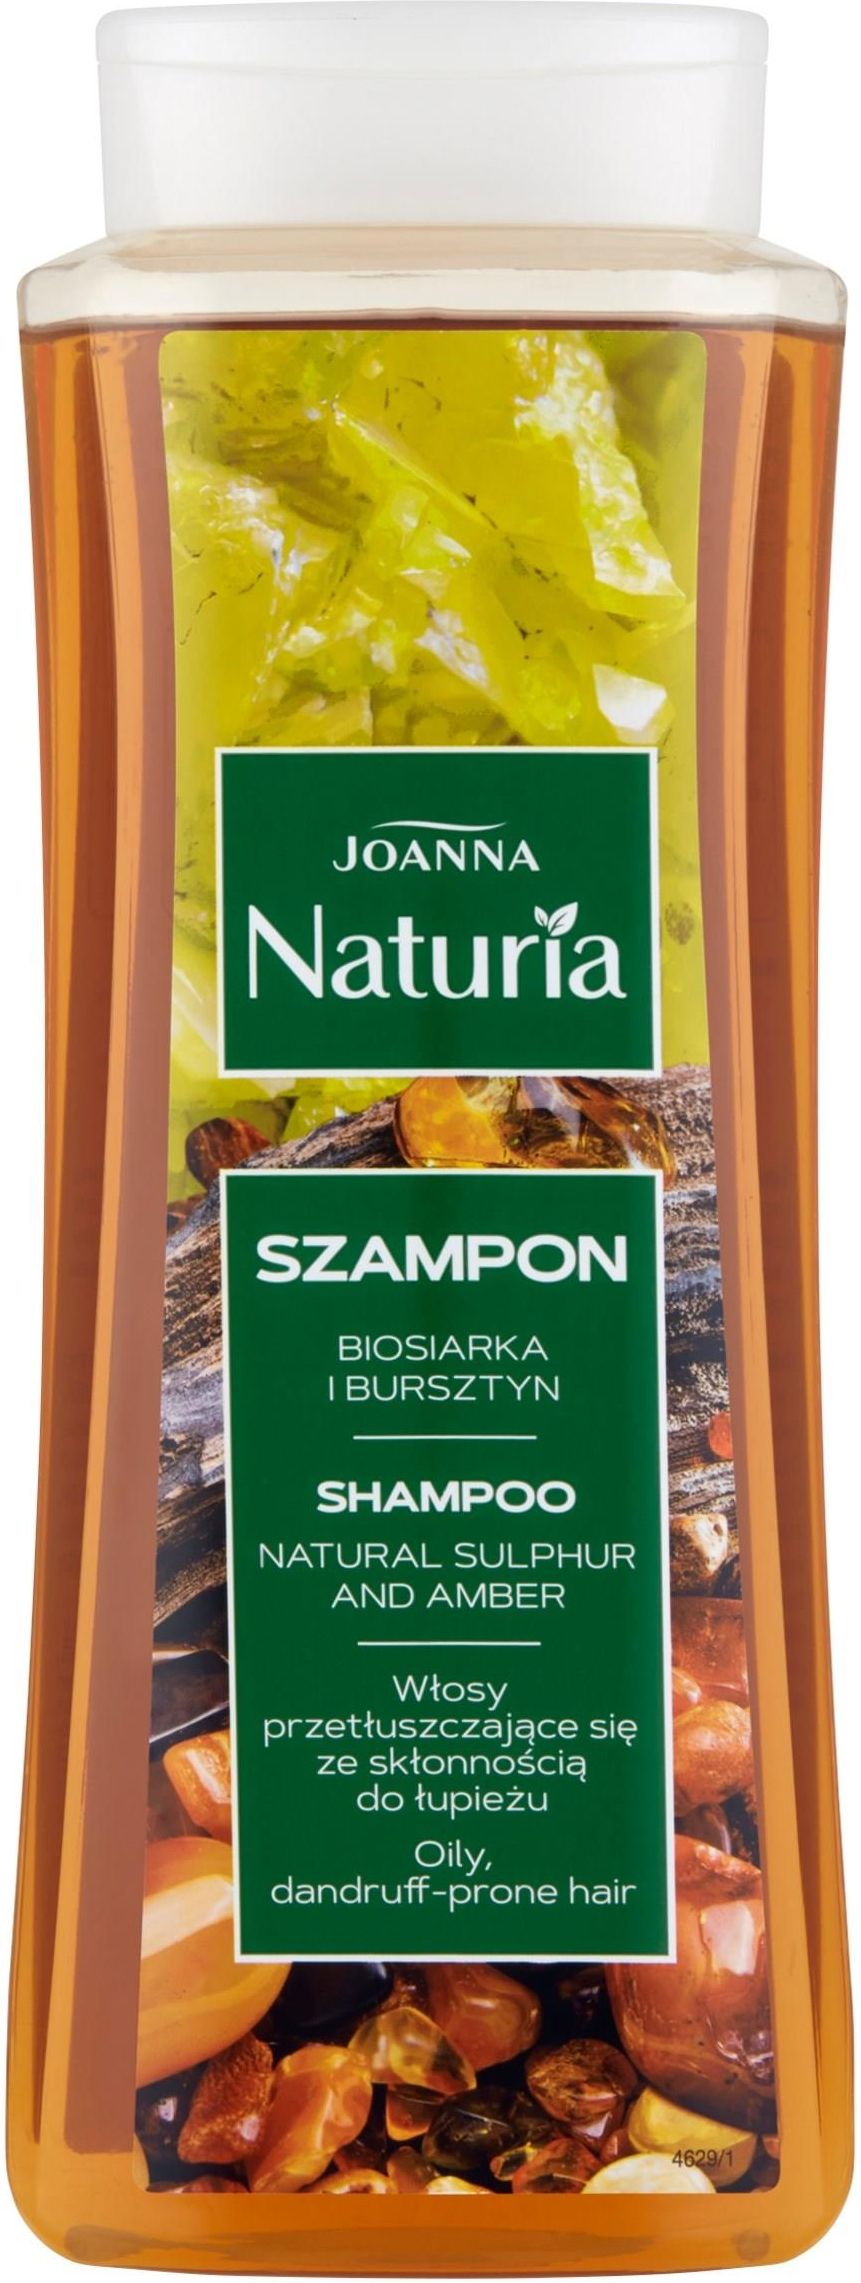 szampon joanna naturia z biosiarką